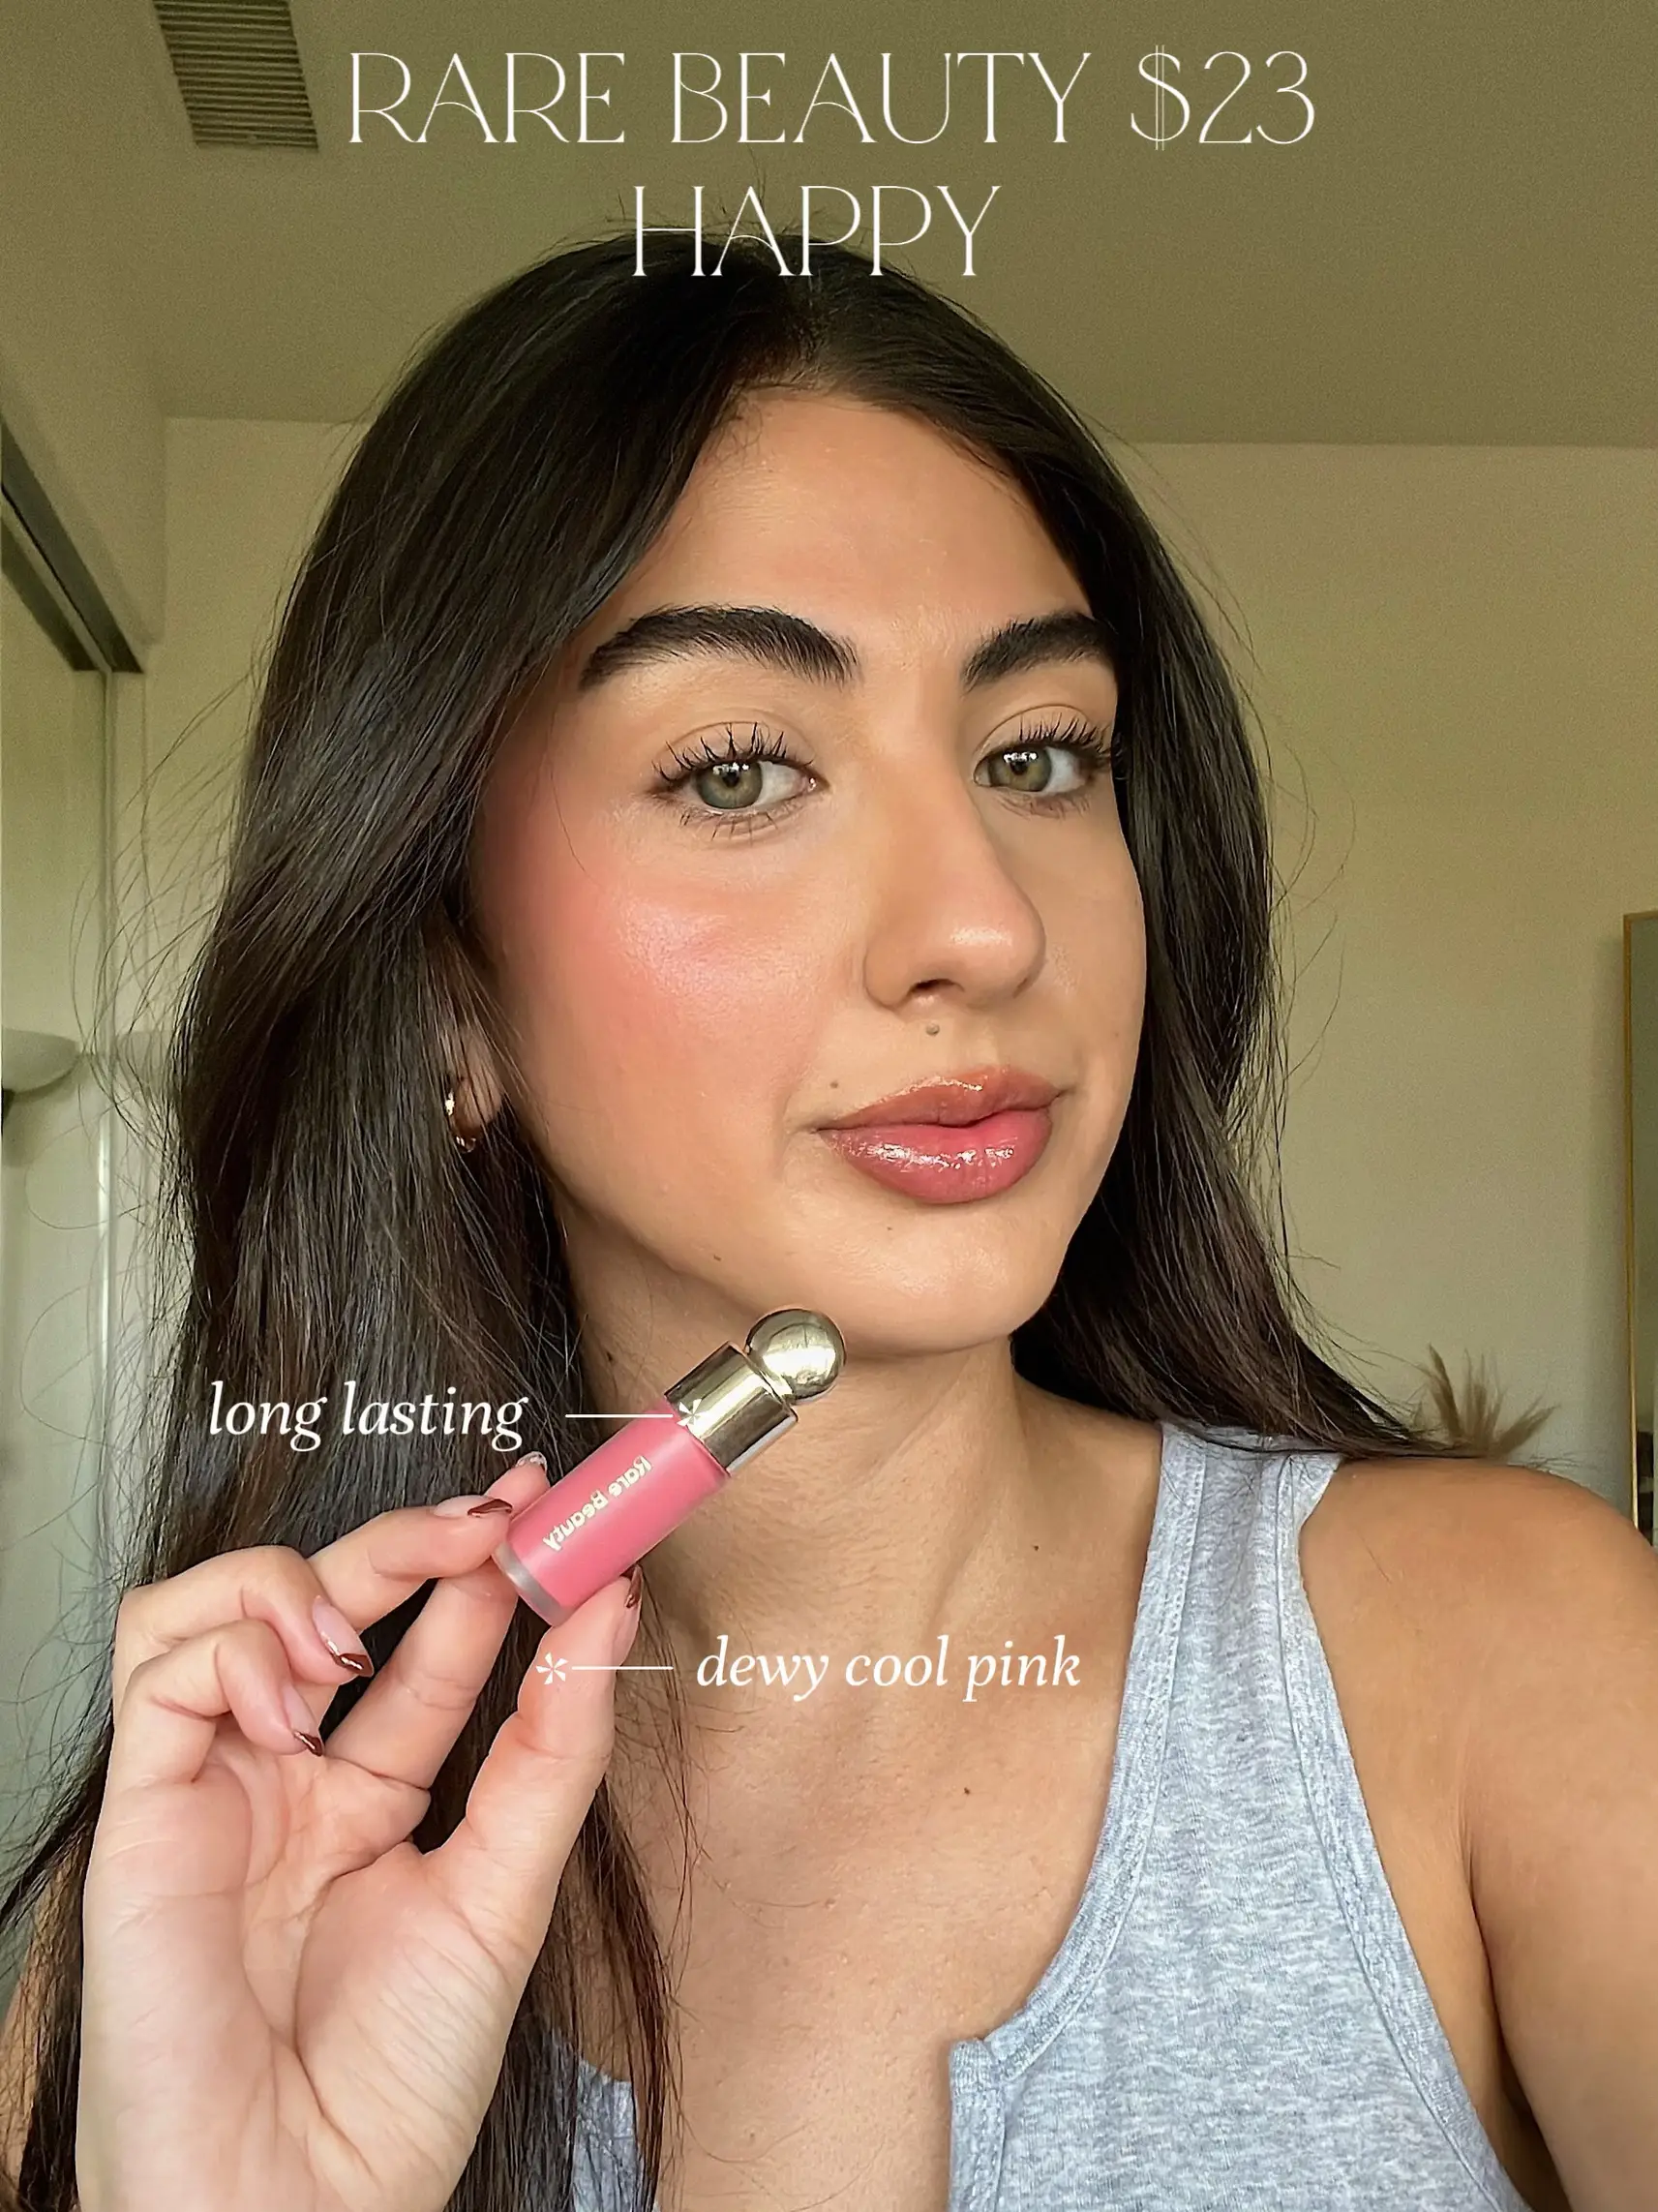 Femme Noir Lipstick – Julie Hewett LA / Hue Cosmetics Inc.